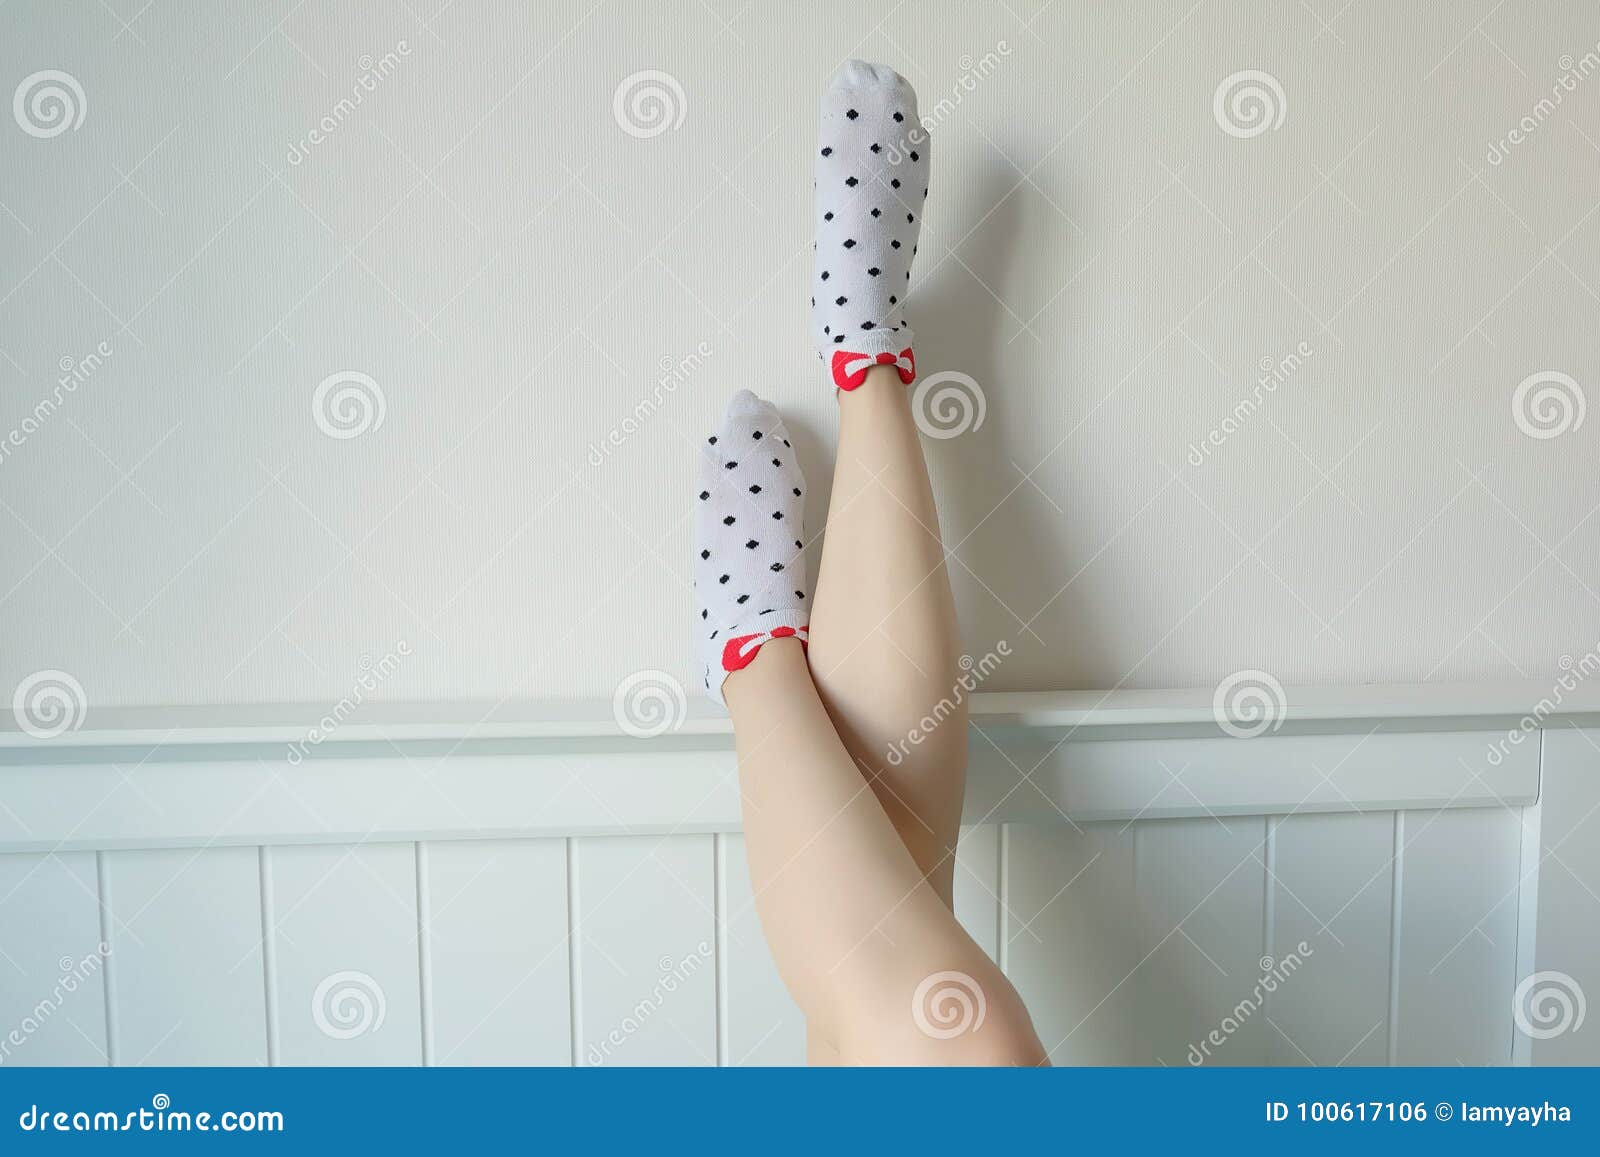 Киска в носочках. Девушки в носках. Девушки в белых носочках. Красивые ноги в носках. Женские ножки в носочках.